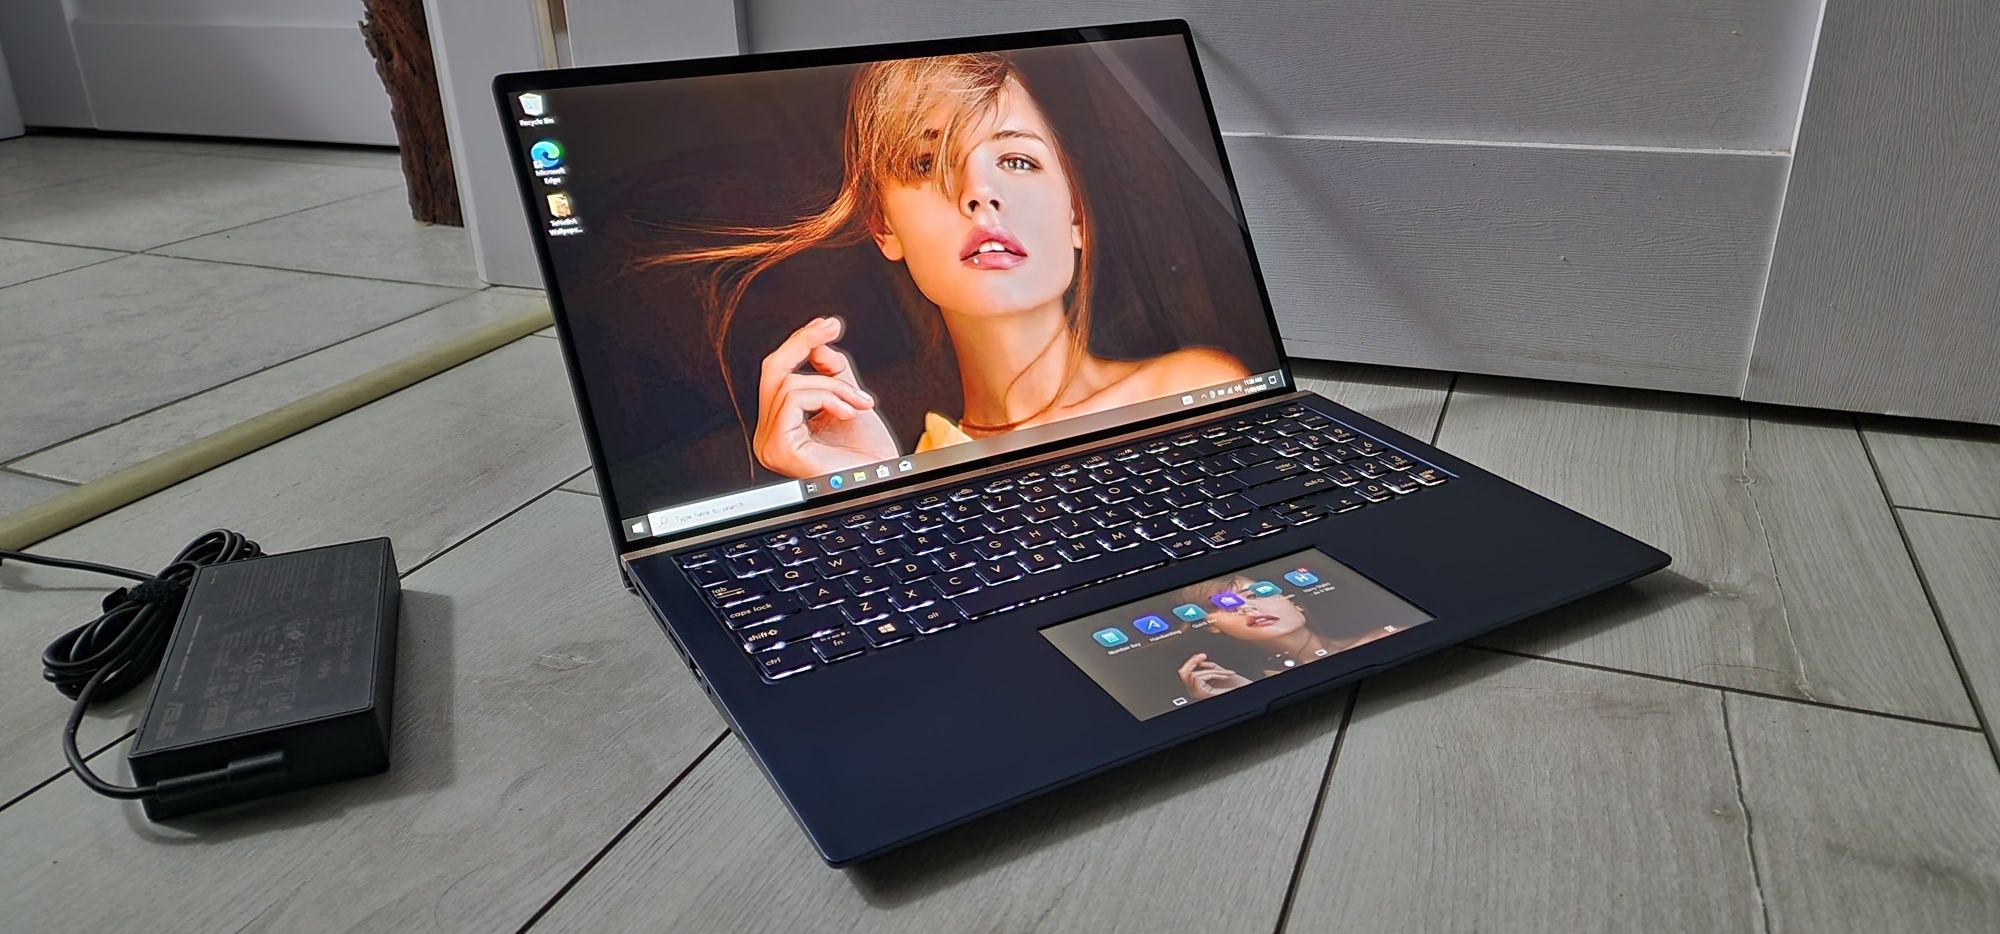 Laptop ZenBook Asus UX534F_4K UHD_I5 10210U, SSD 512GB, GTX 1650 Max-Q